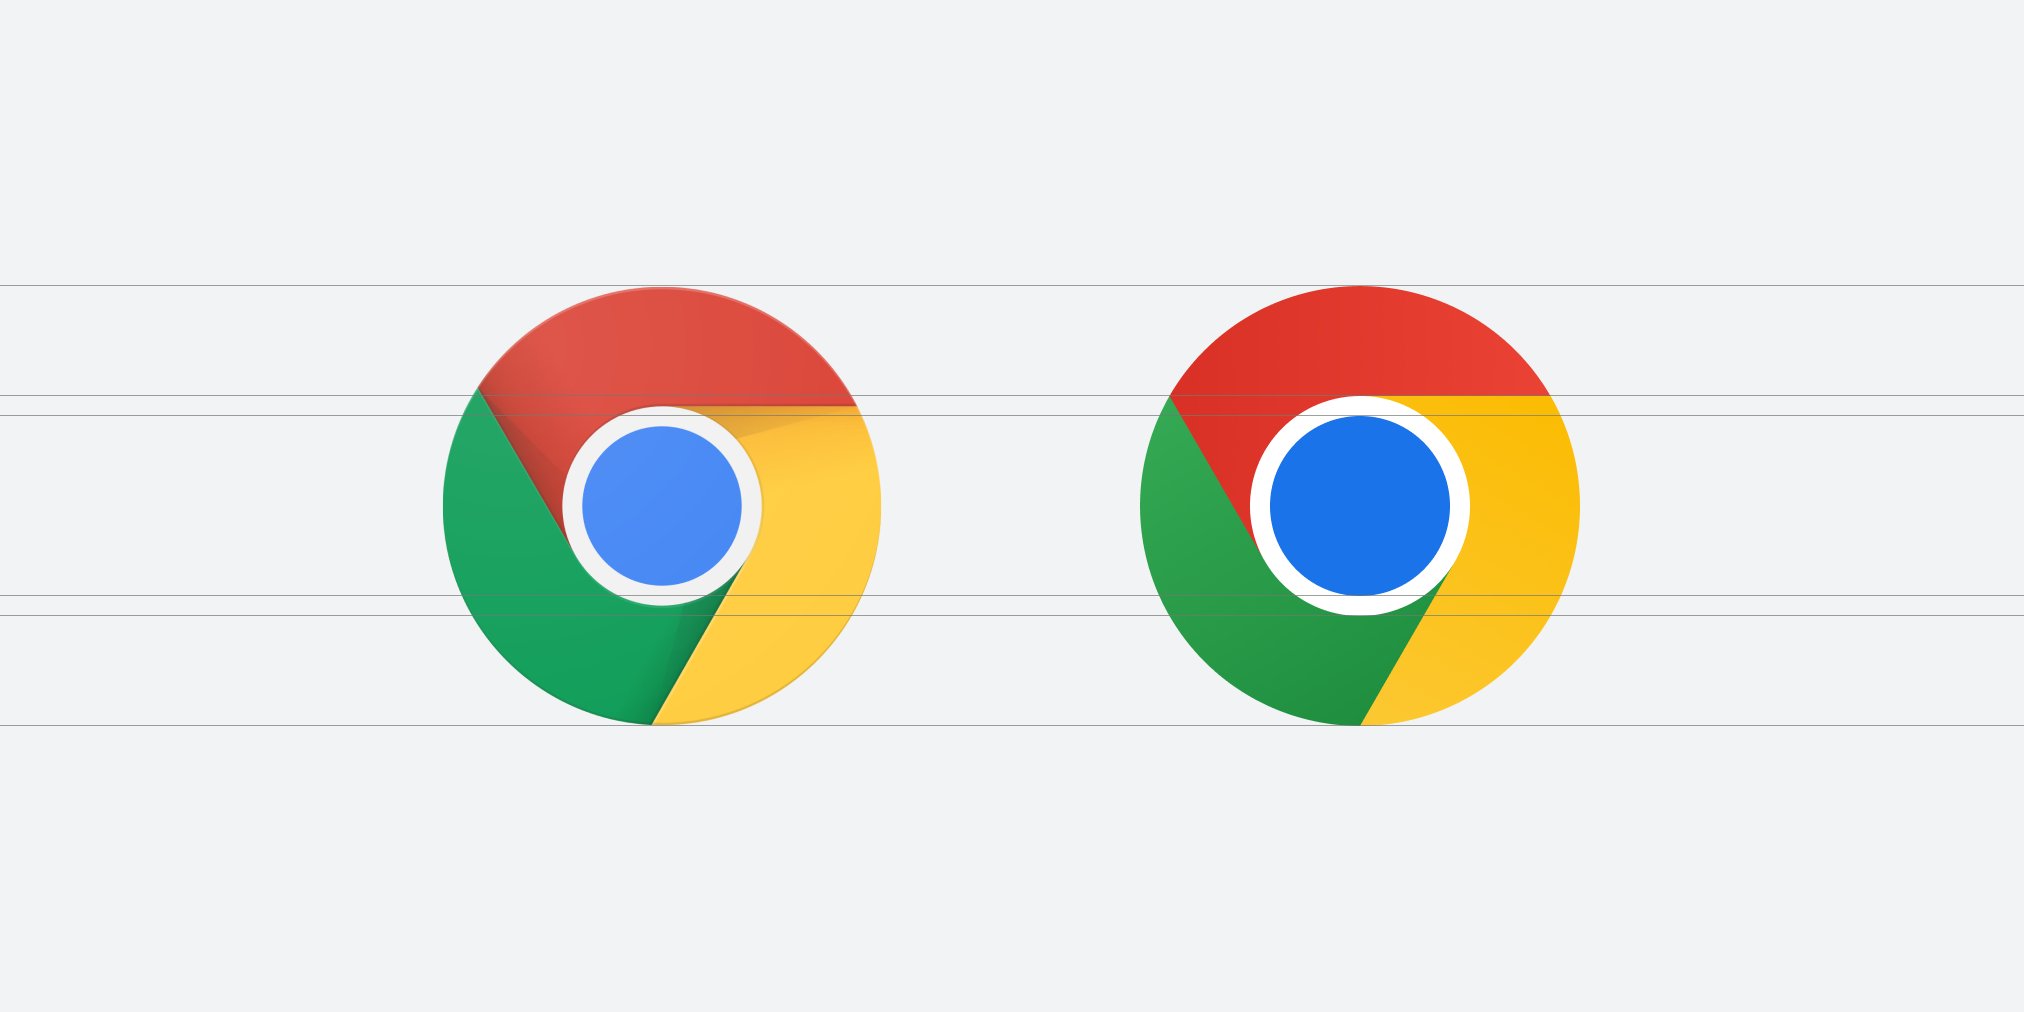 Đố bạn biết icon Chrome mới khác icon cũ chỗ nào